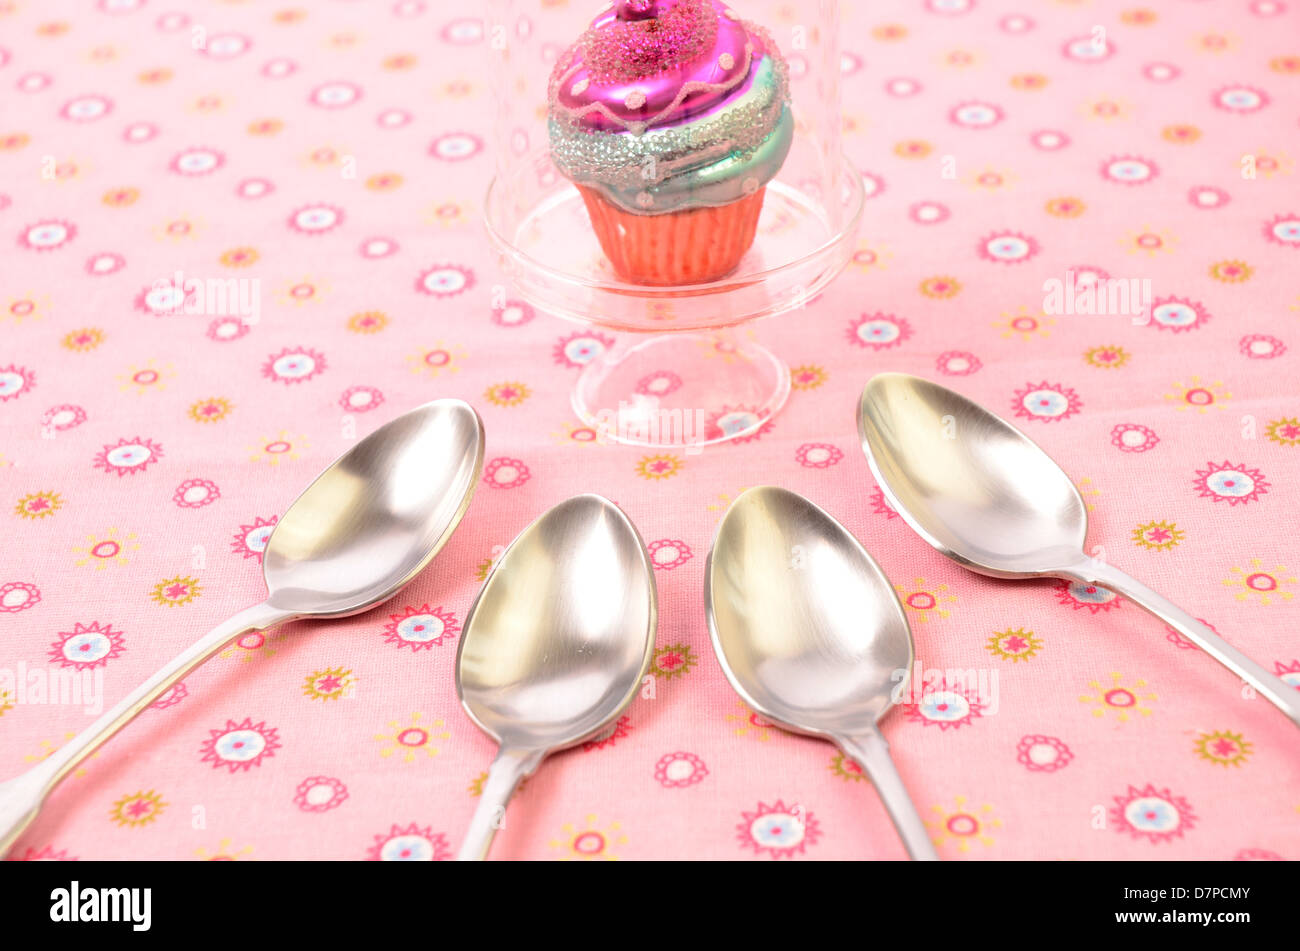 Fehlerhaft-Konzept mit einem bunten Cupcake und vier Löffel essen Stockfoto